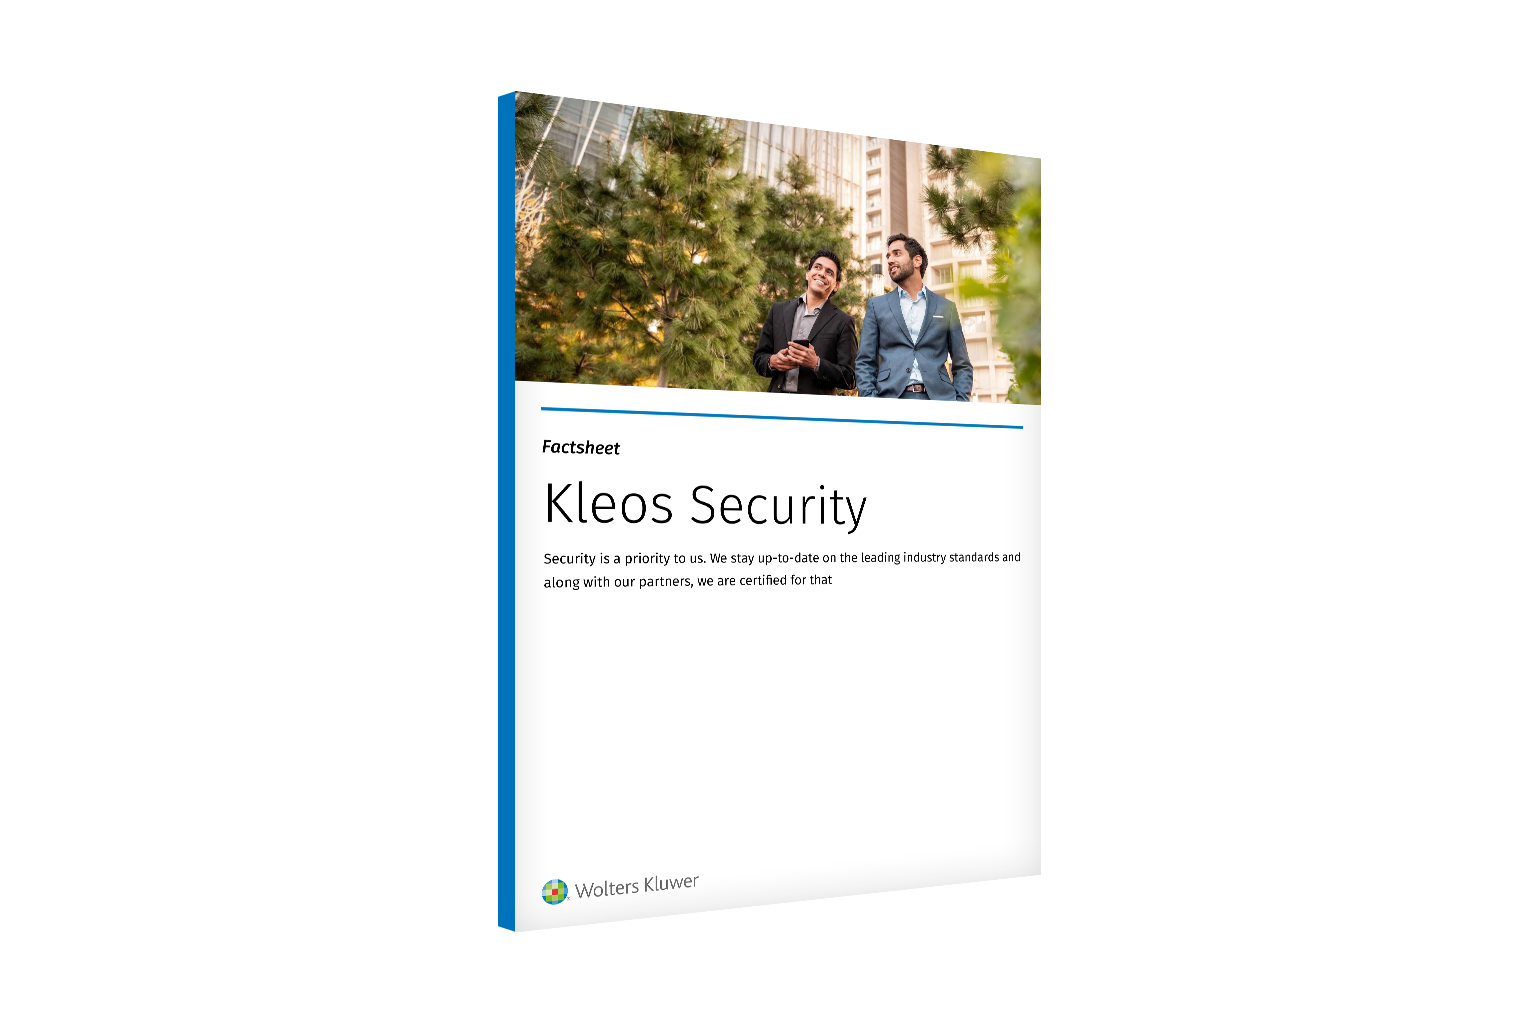 Kleos-Security-EN-EU-1536x1024